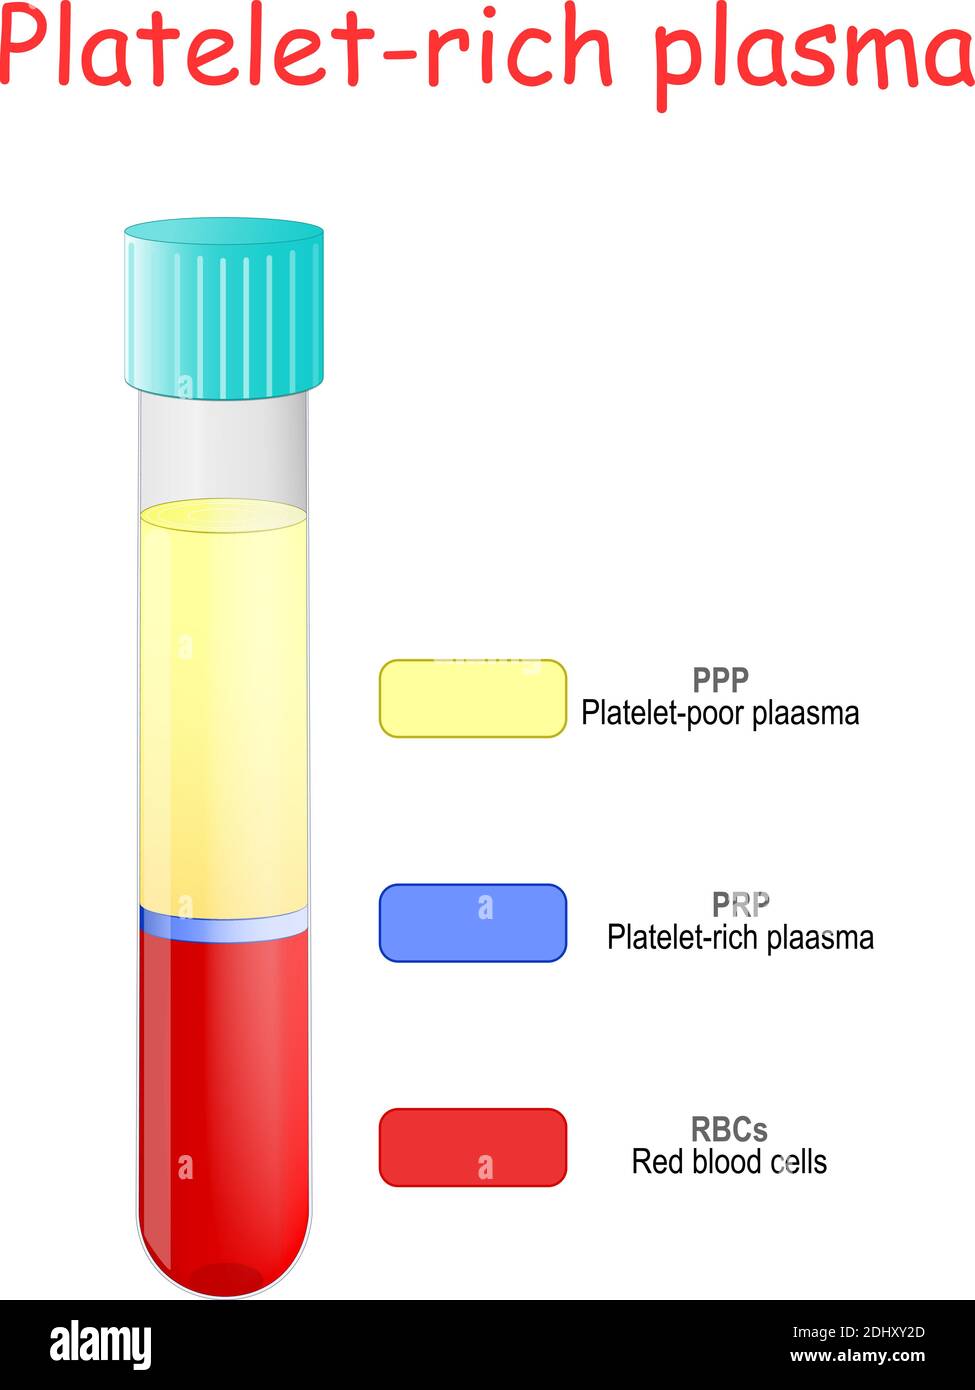 Plasma ricco di piastrine. Strati di sangue in una provetta di vetreria. Provetta per analisi con PRP. In vitro. Illustrazione Vettoriale